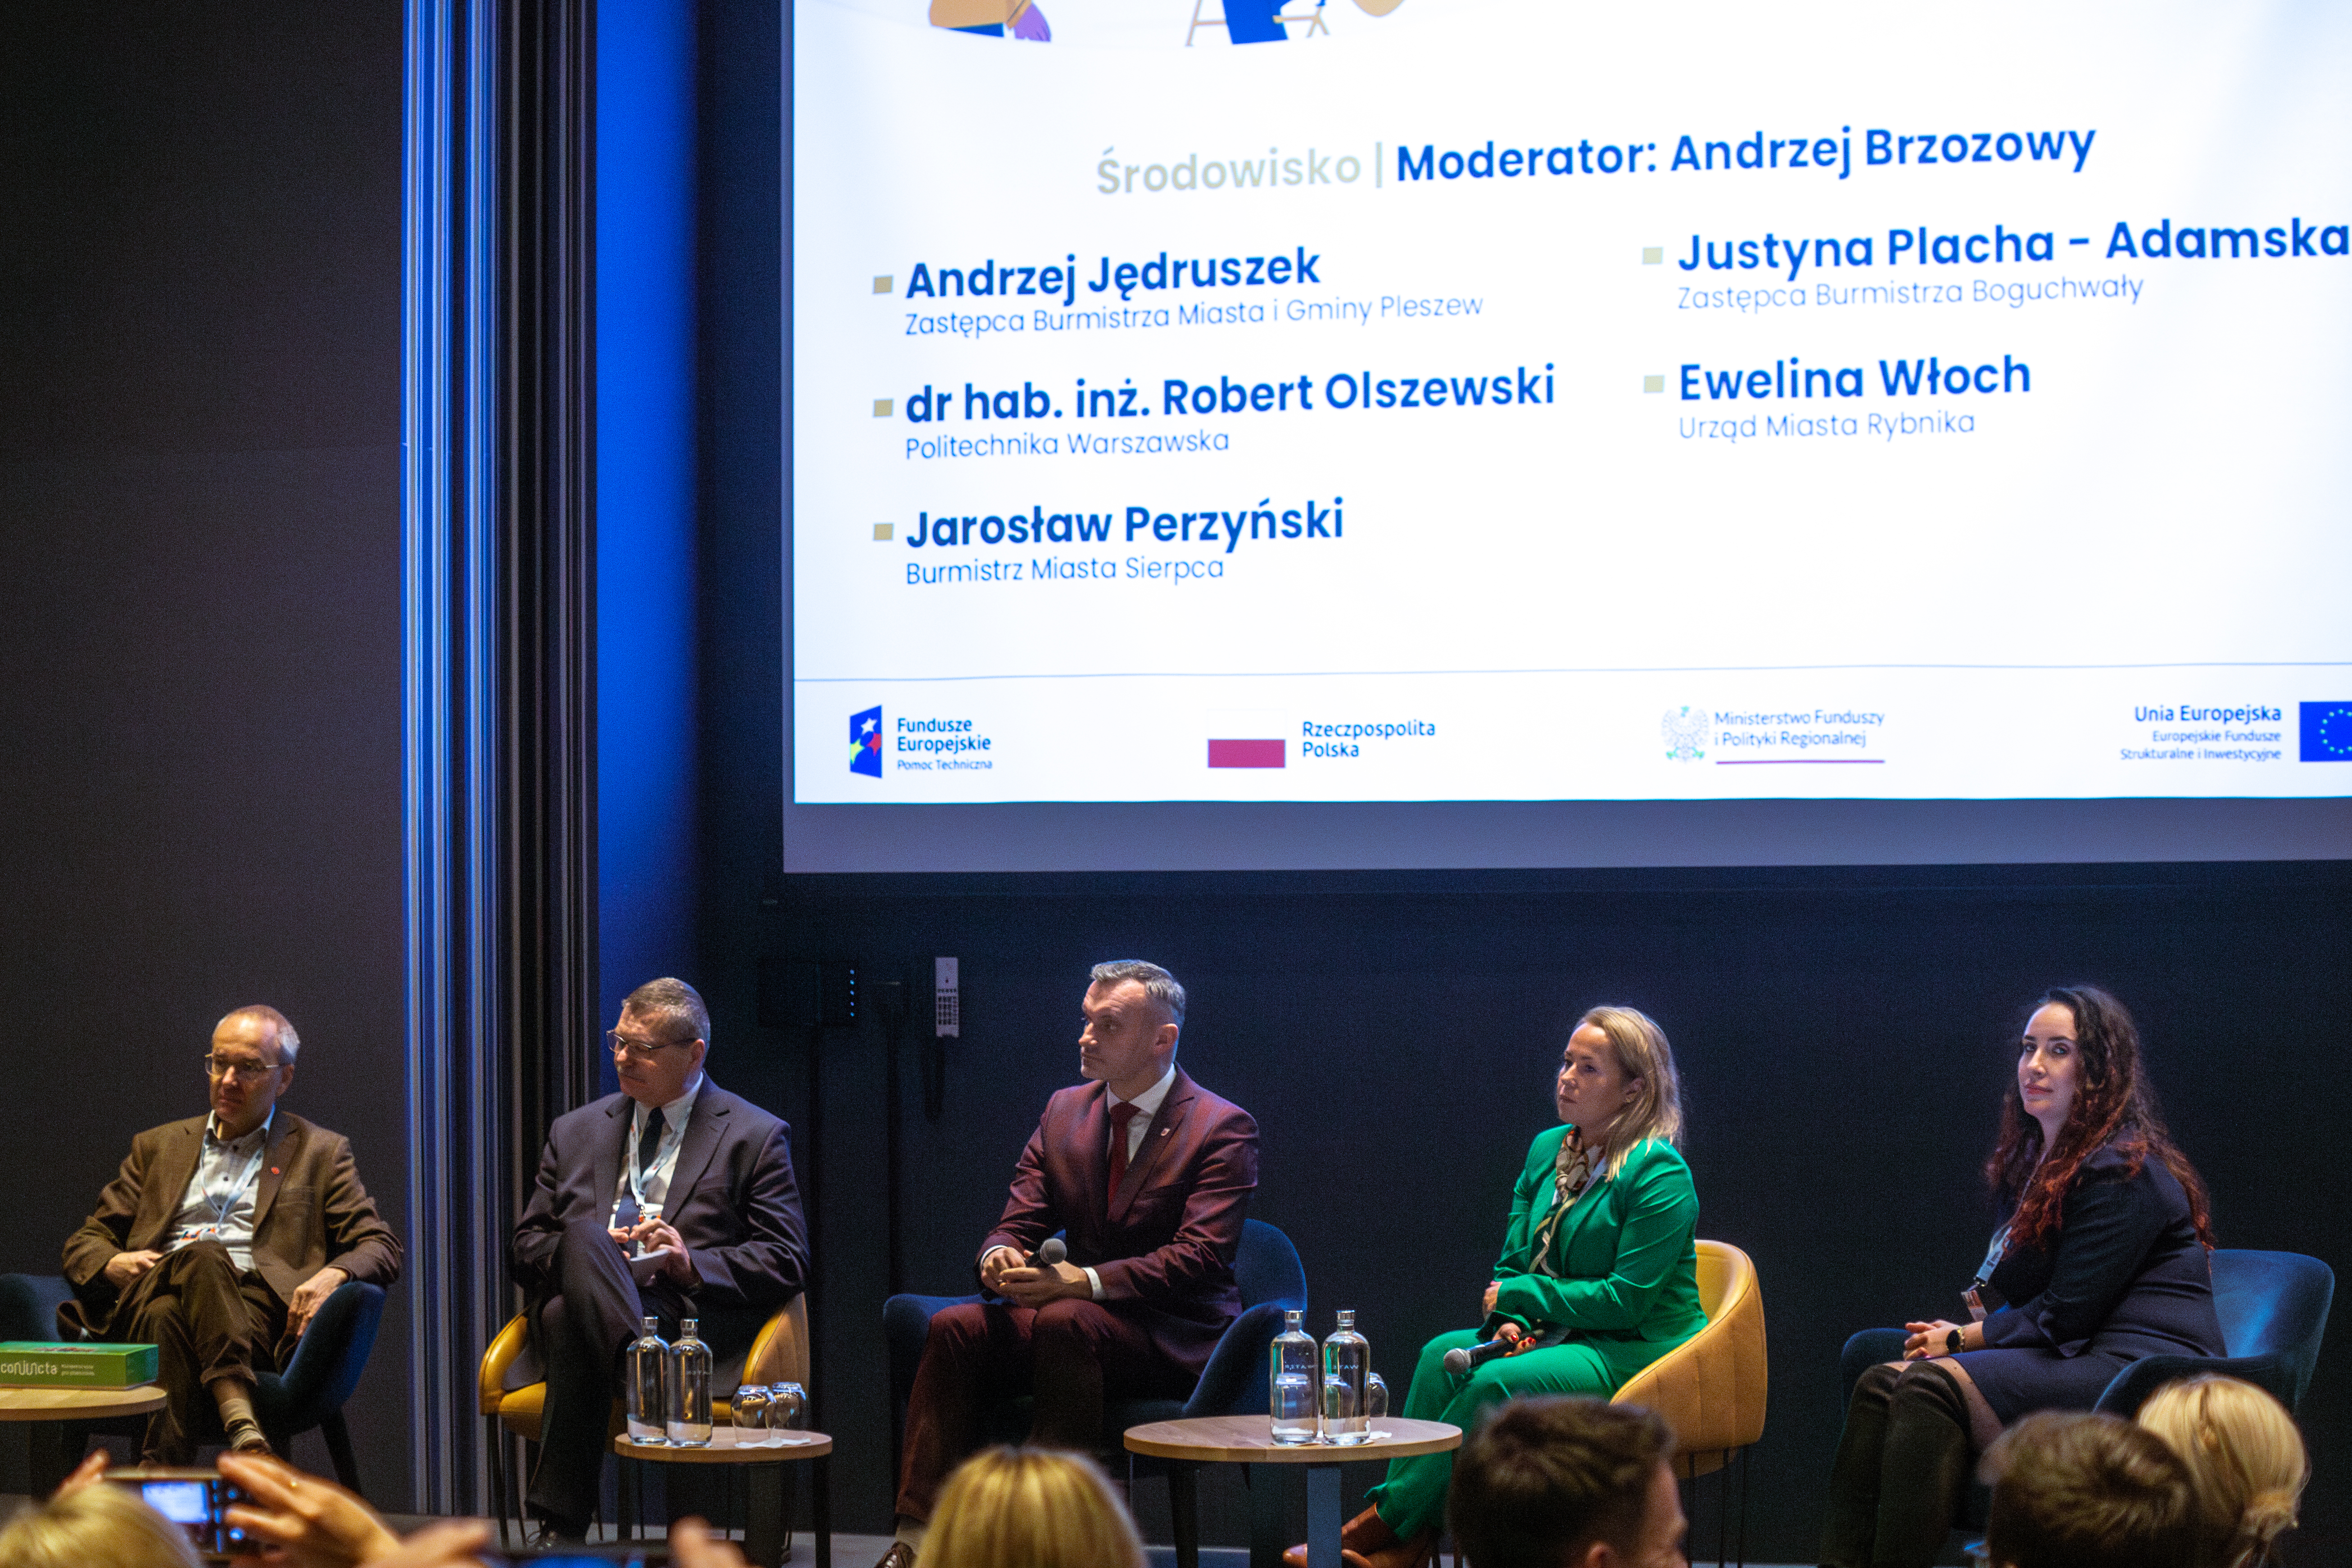 Panel "Środowisko" (moderator: Andrzej Brzozowy, paneliści: dr hab. inż. Robert Olszewski, Andrzej Jędruszek, Jarosław Perzyński, Justyna Placha-Adamska, Ewelina Włoch)